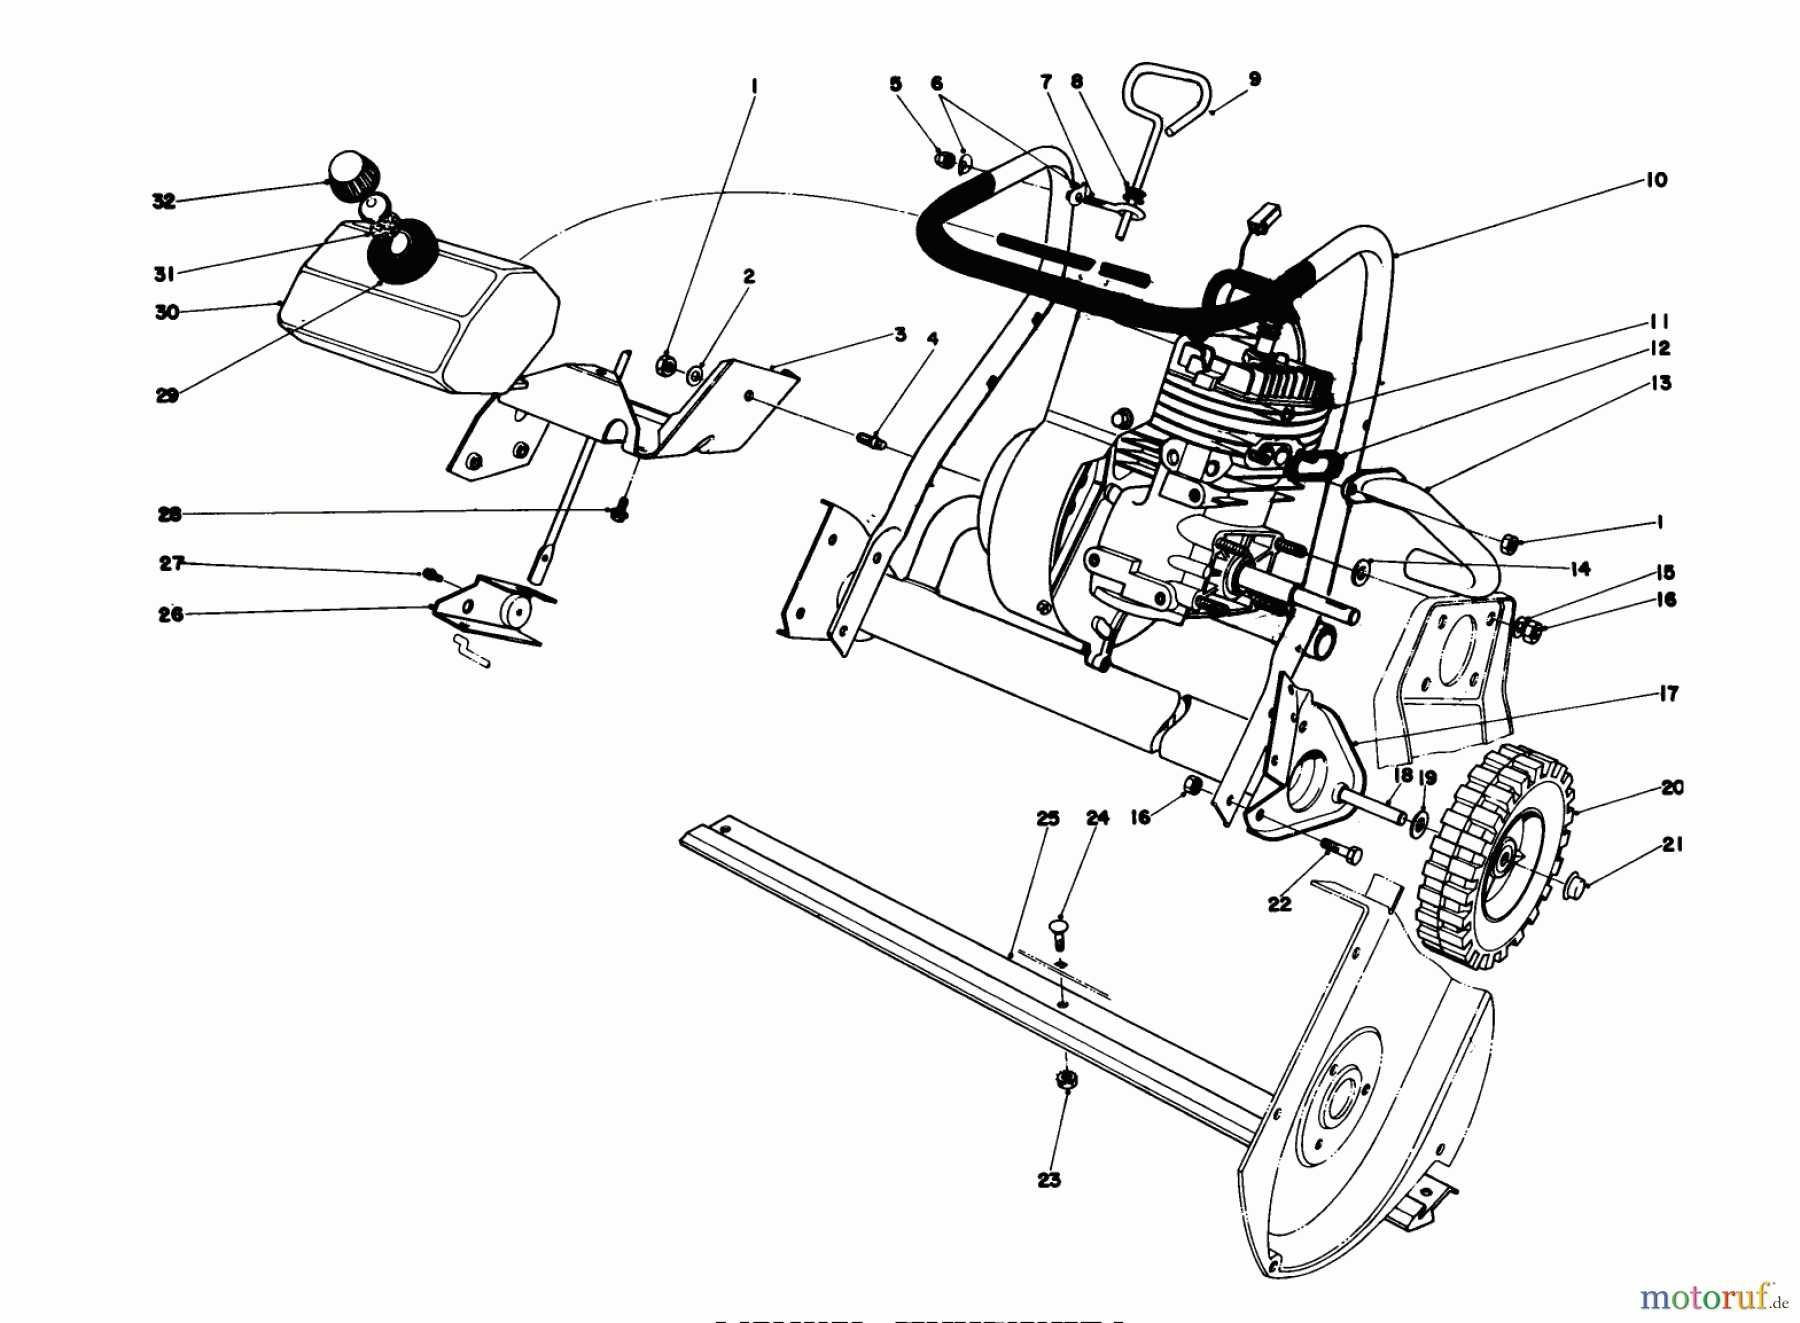  Toro Neu Snow Blowers/Snow Throwers Seite 1 38232 (S-200) - Toro S-200 Snowthrower, 1981 (1000001-1999999) ENGINE ASSEMBLY #1